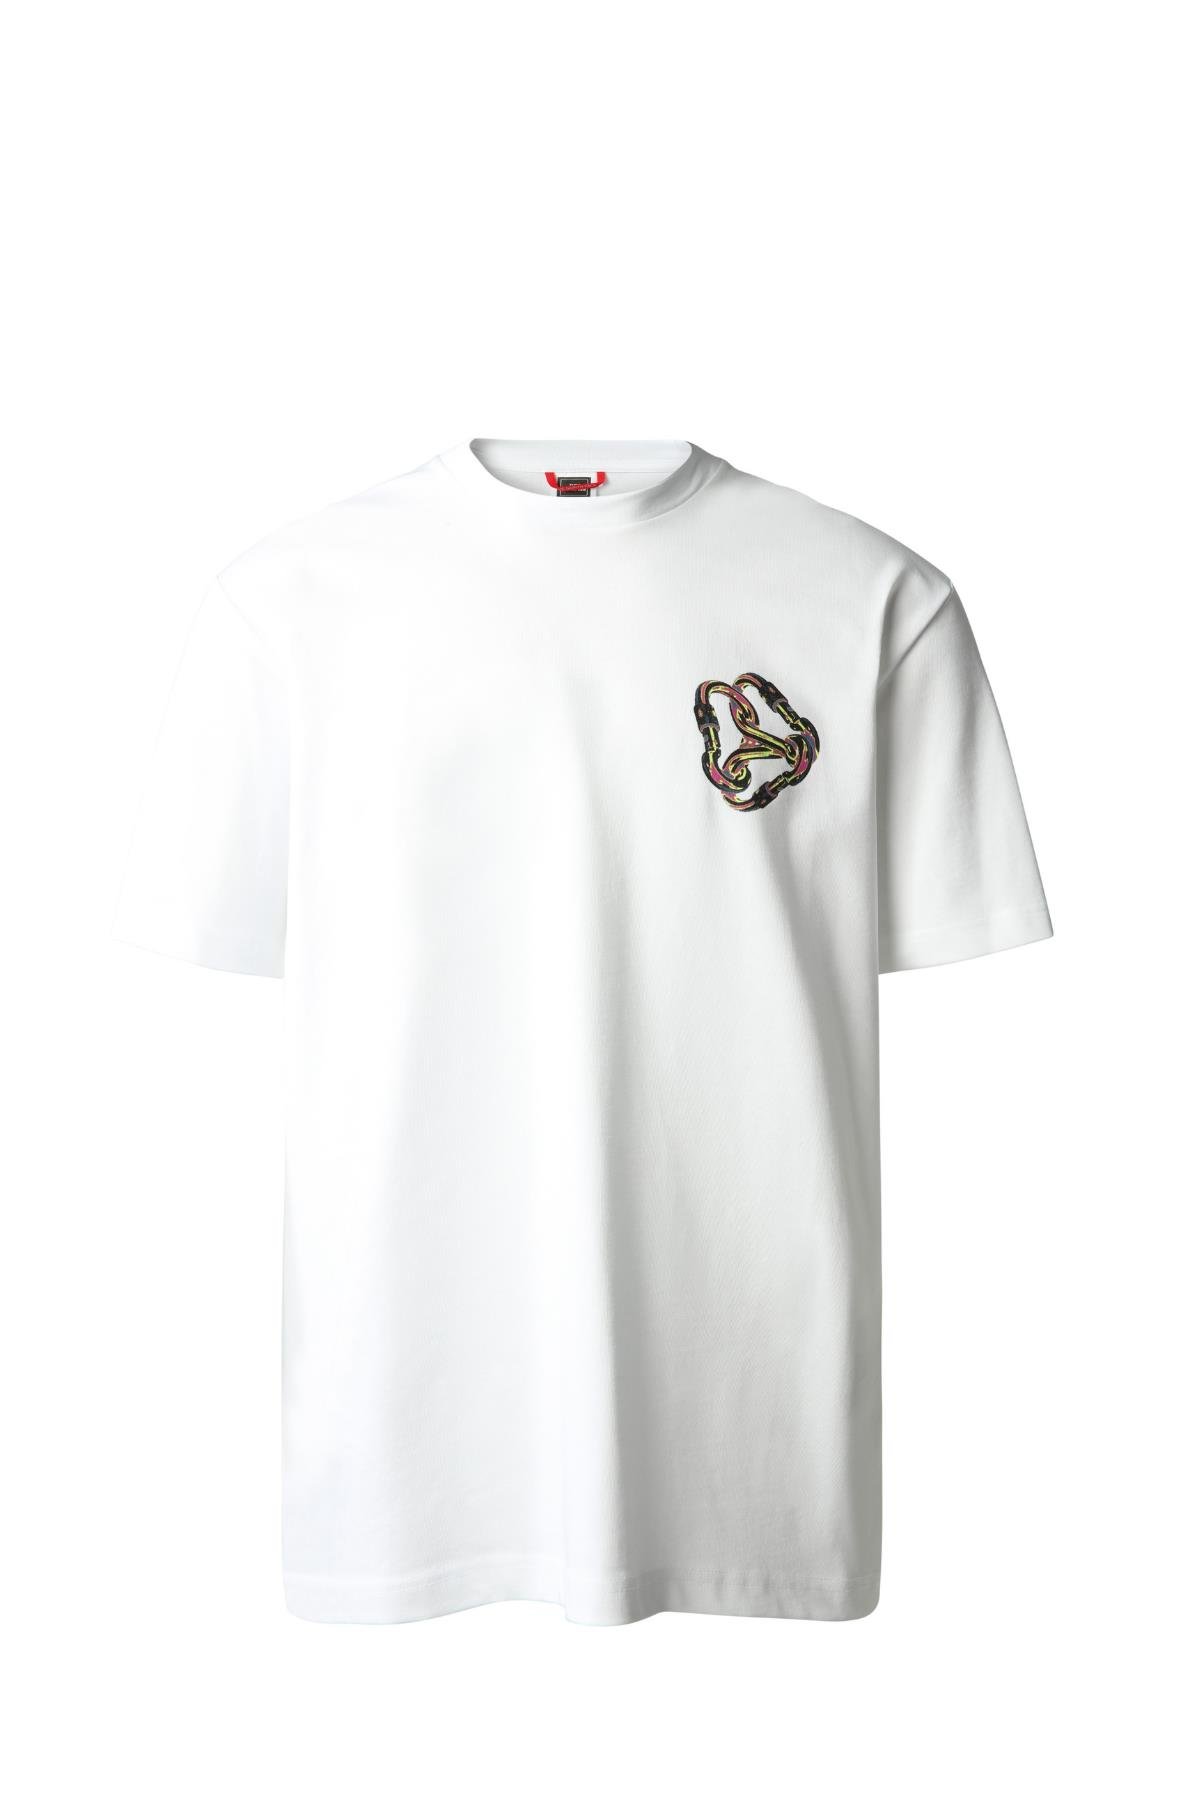 The North Face M Graphic T-Shirt Erkek Tişört Beyaz